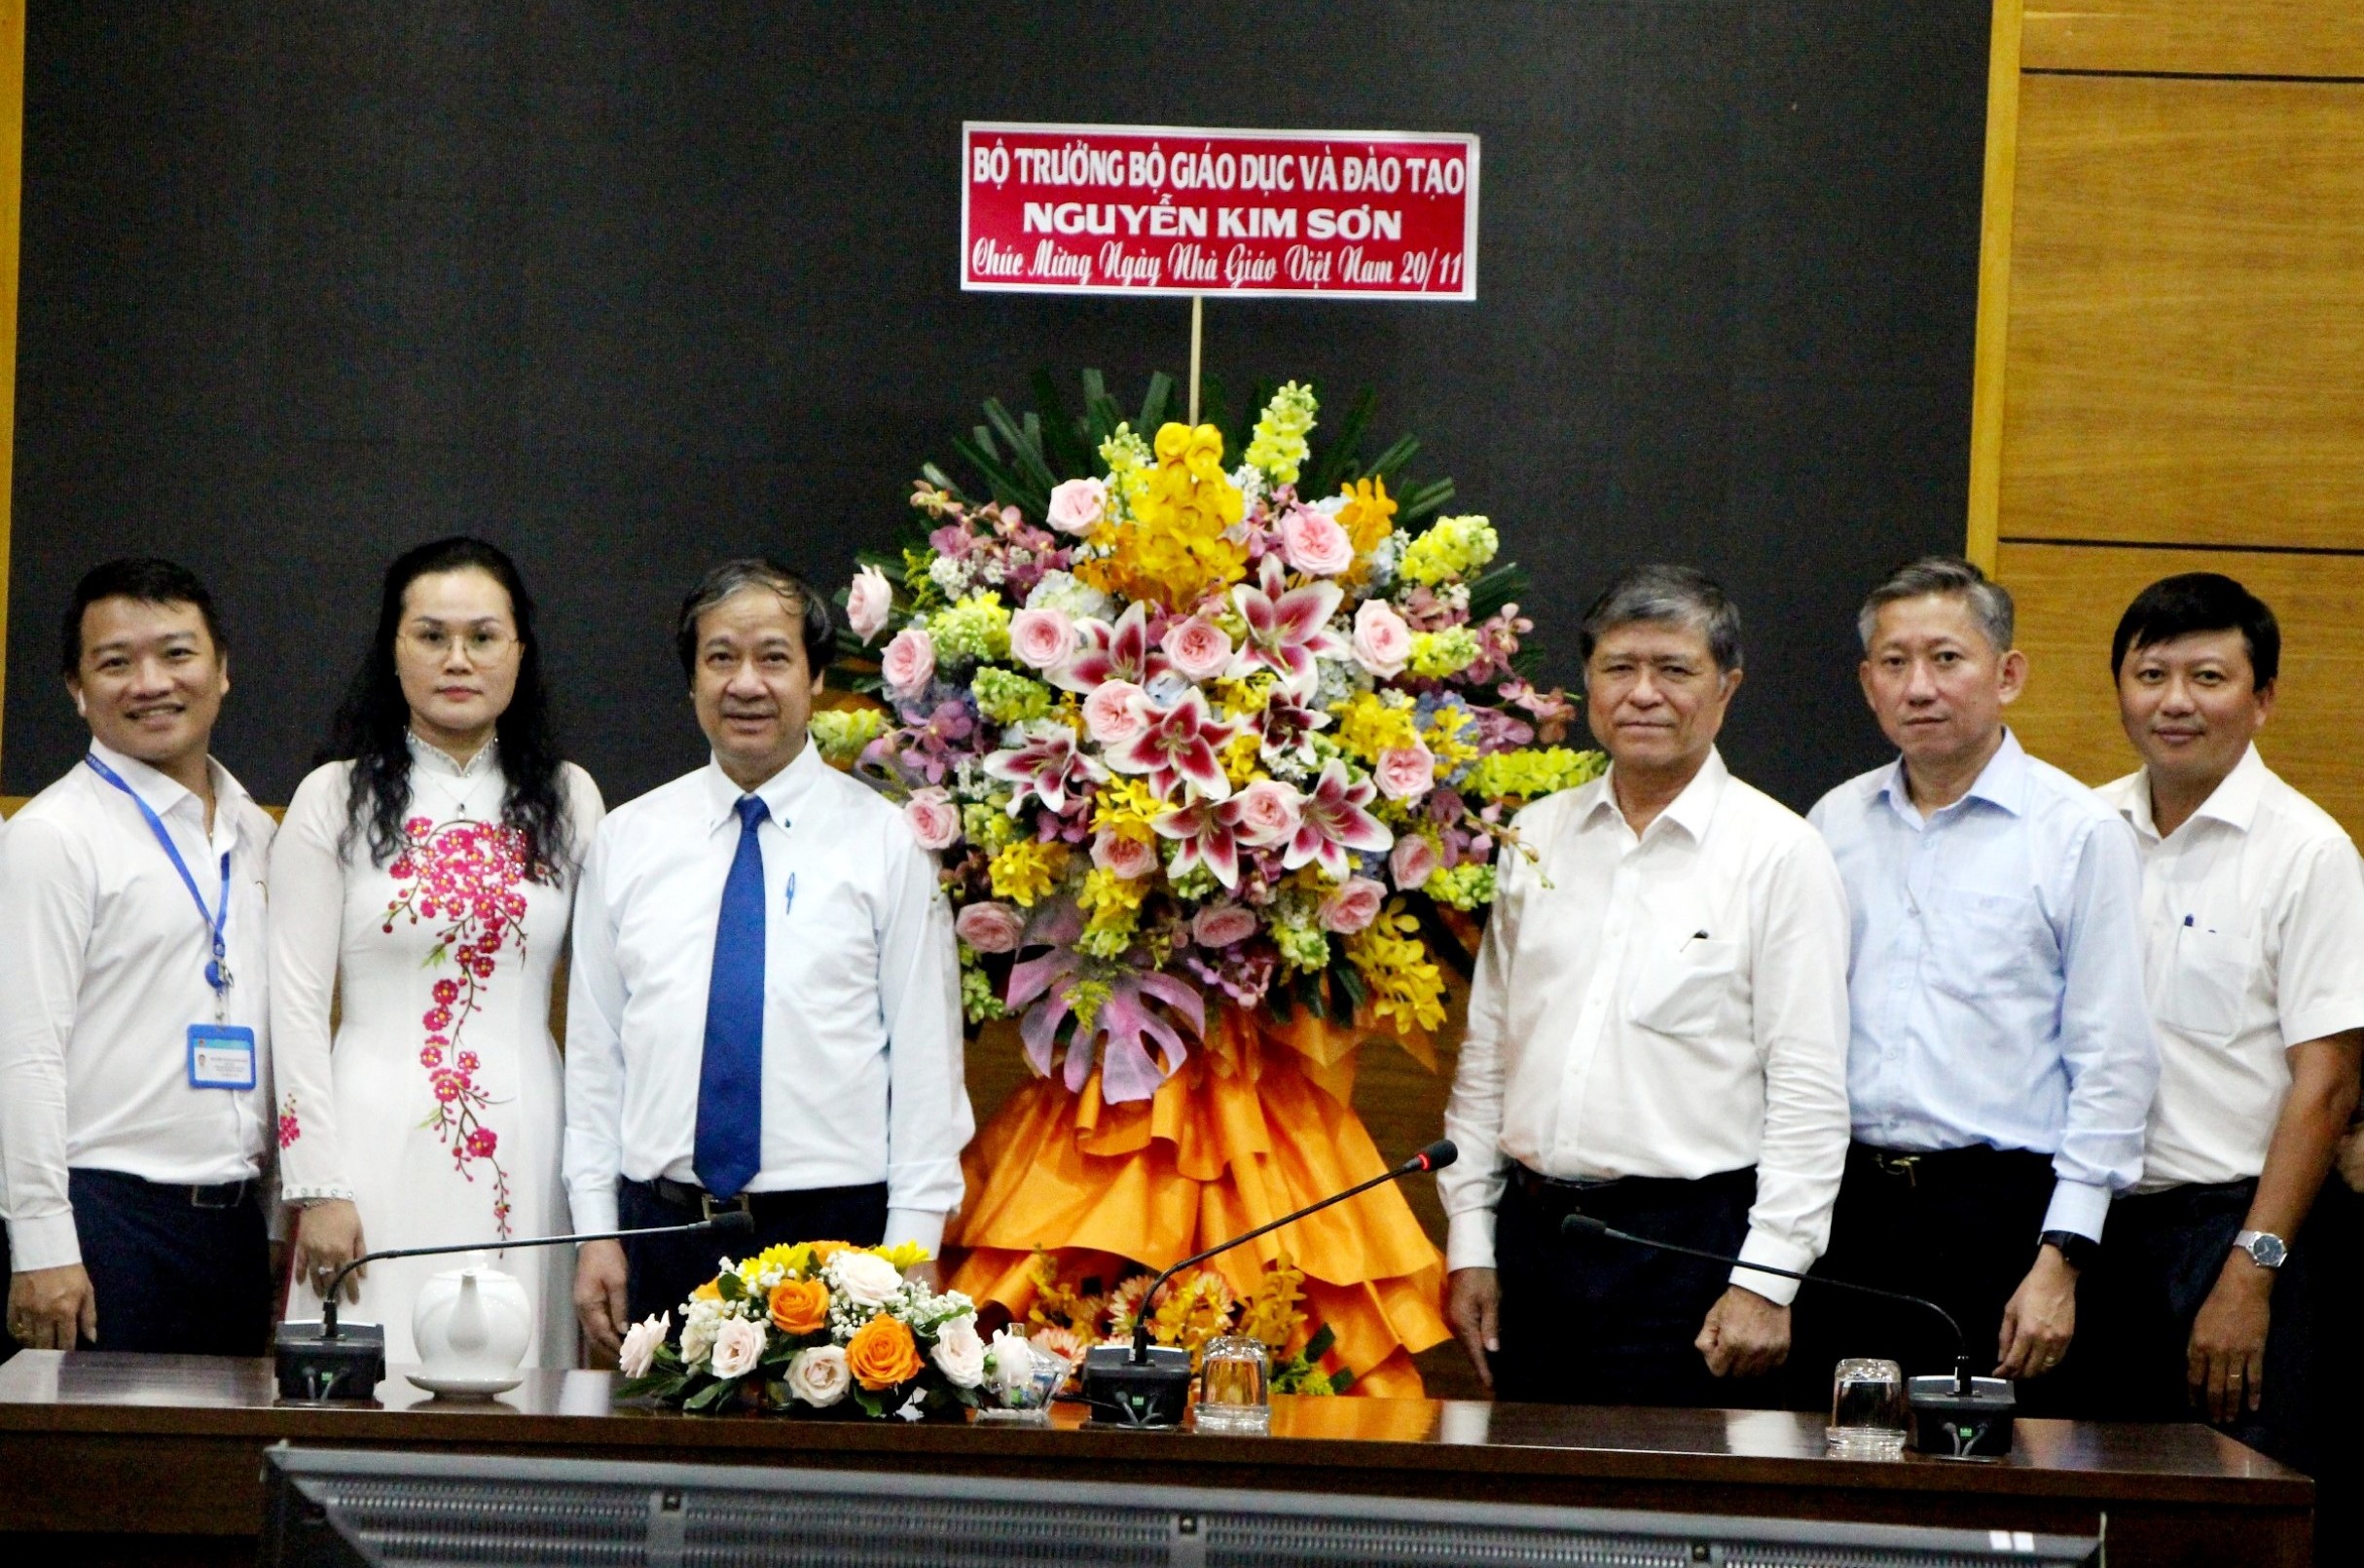  Bộ trưởng Bộ GD&ĐT Nguyễn Kim Sơn thăm, chúc mừng Sở GD&ĐT TPHCM.